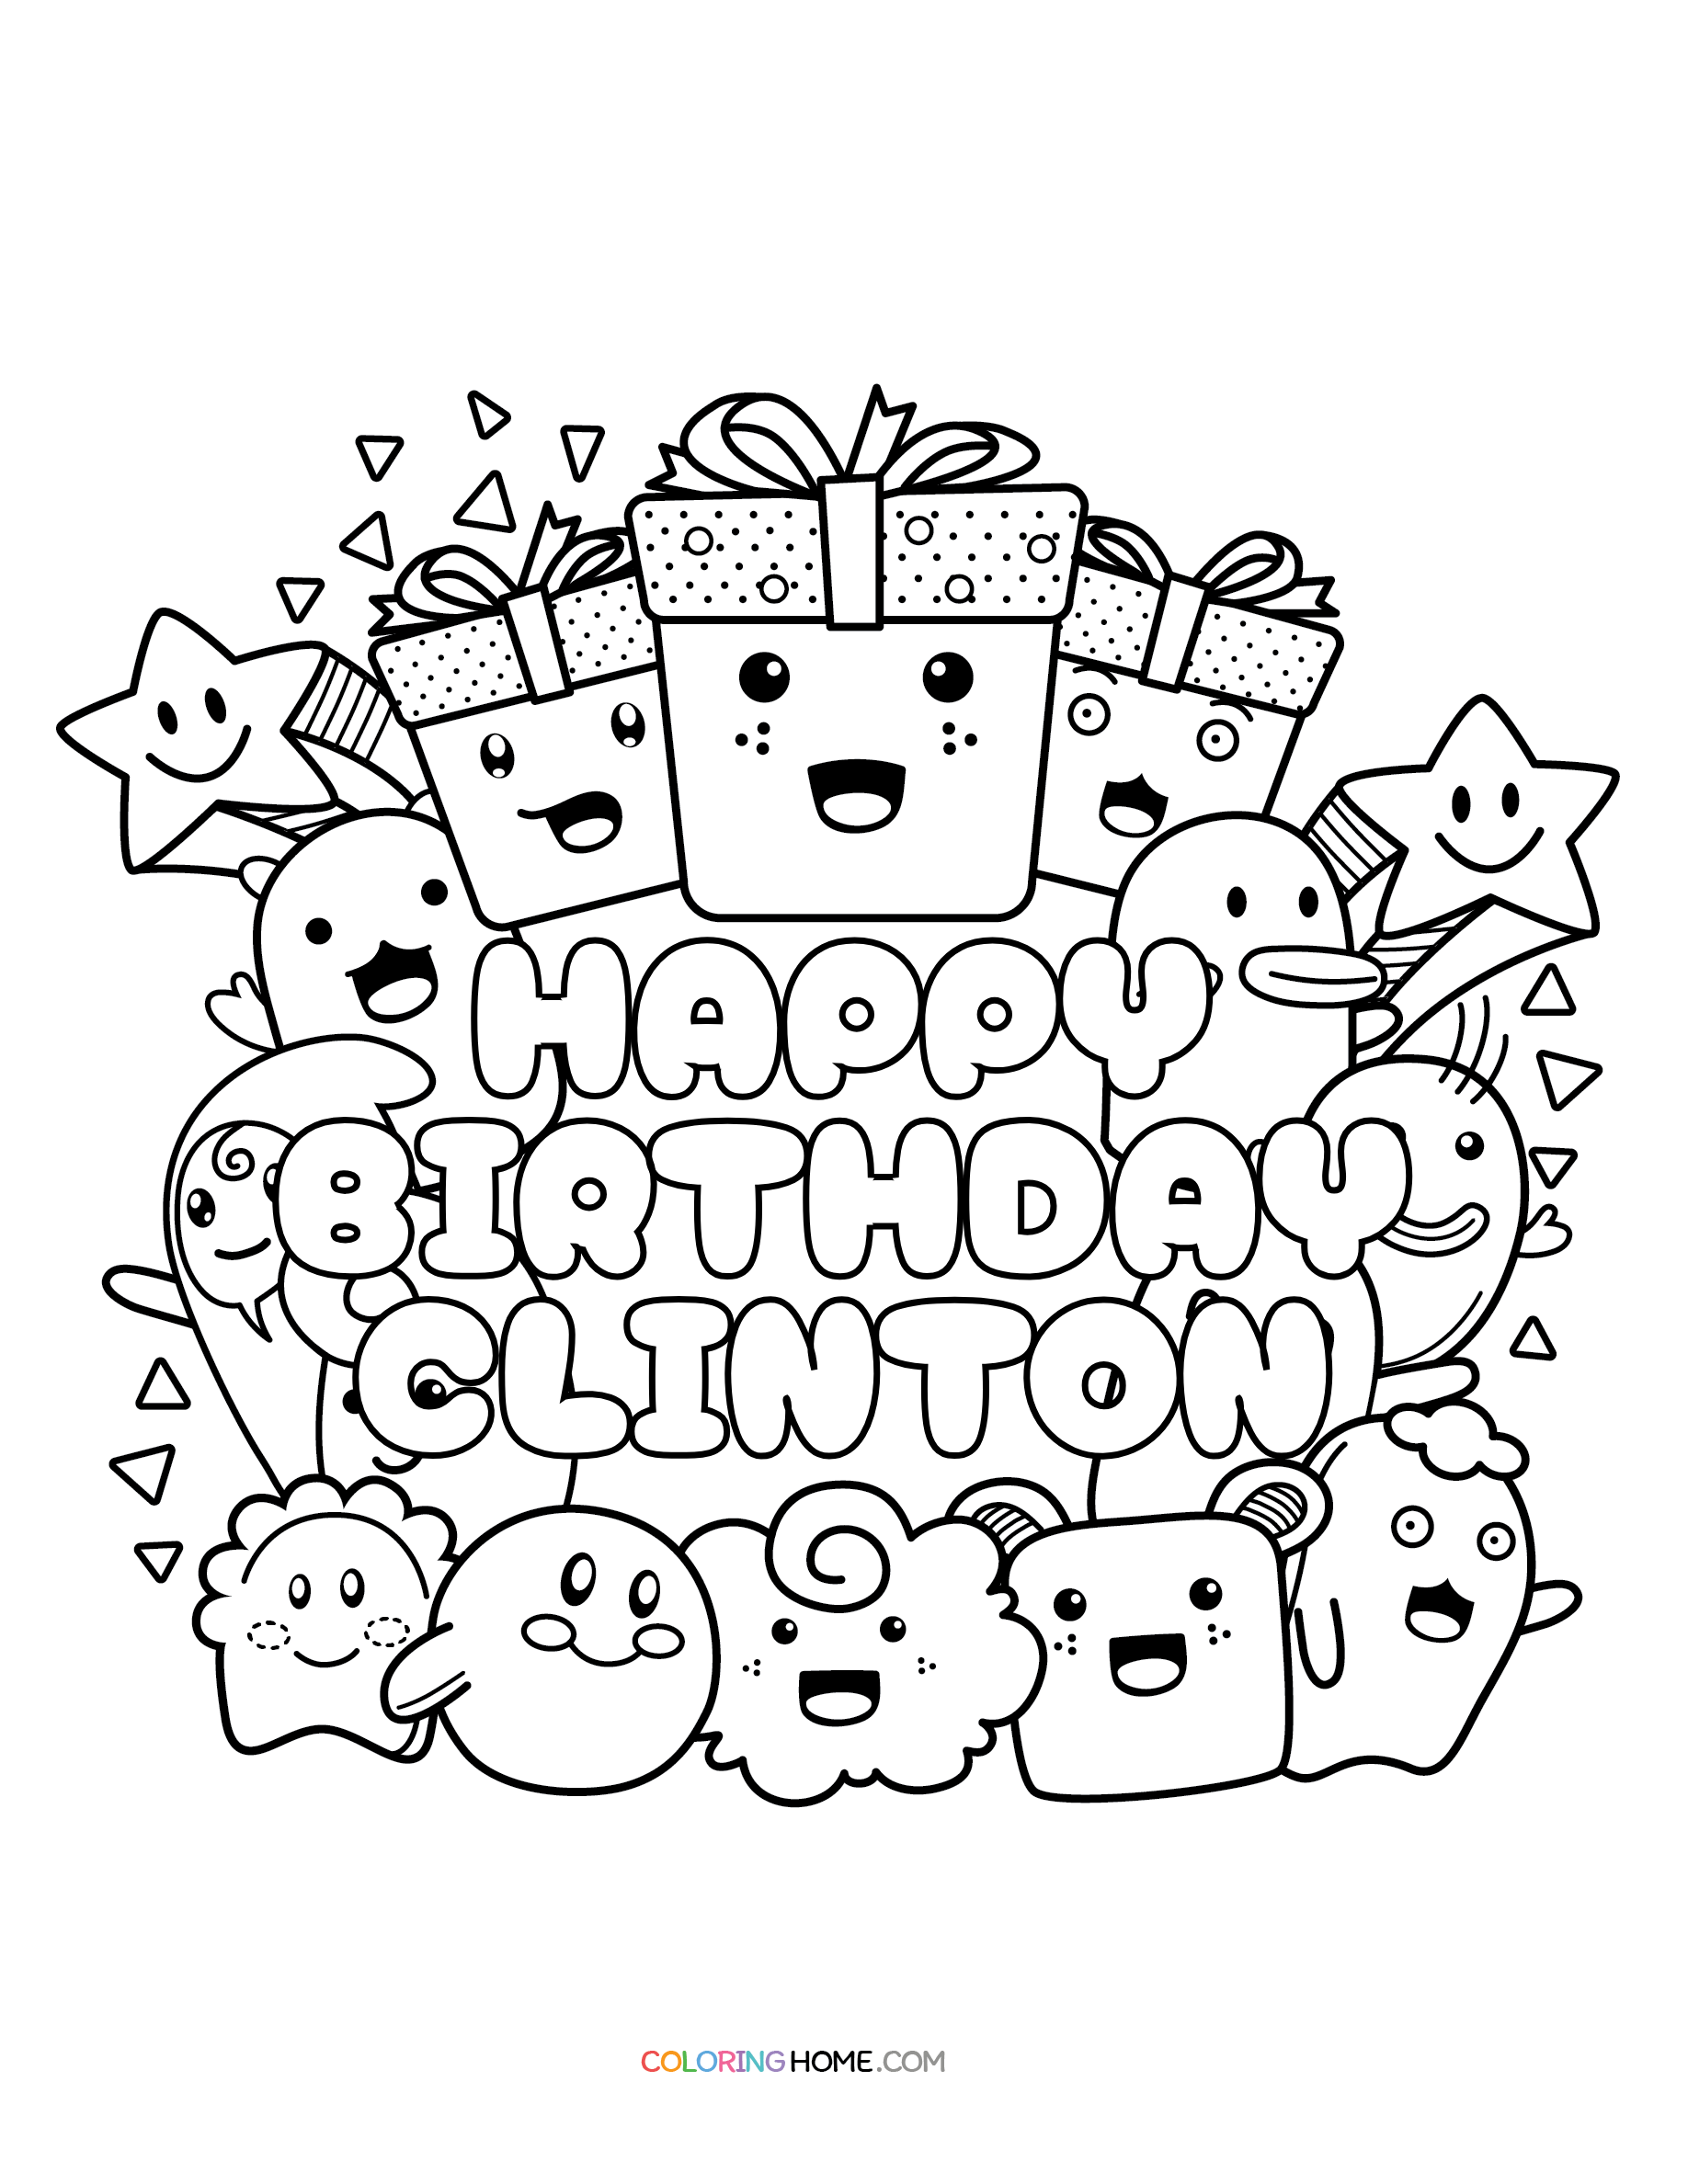 Happy Birthday Clinton coloring page